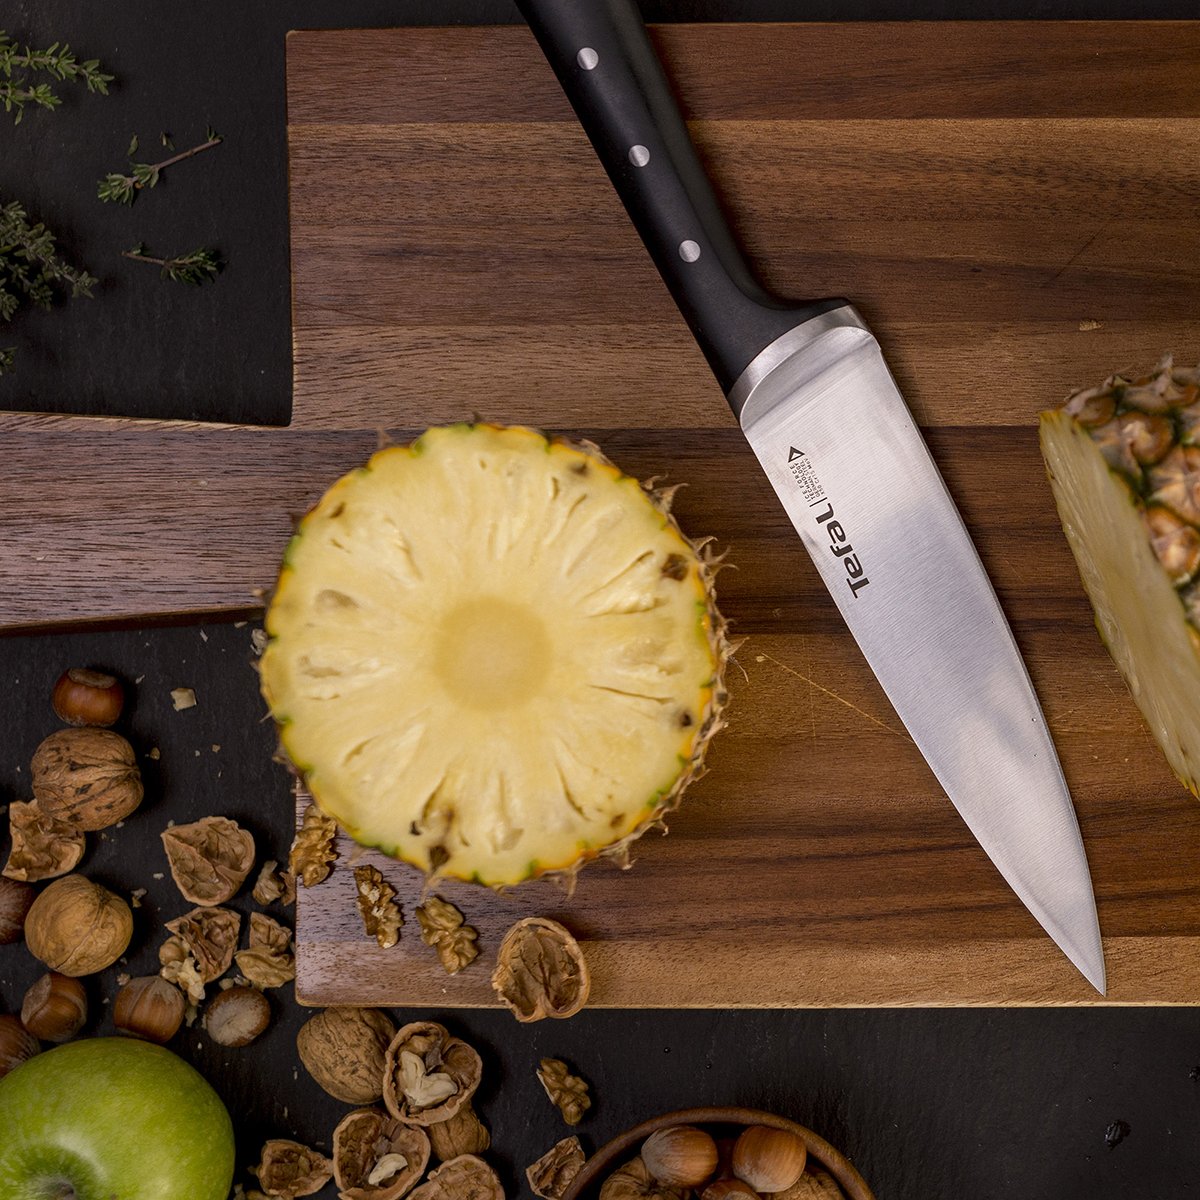 Cuchillo Para Carne de Acero inoxidable de la marca Brassa Masters